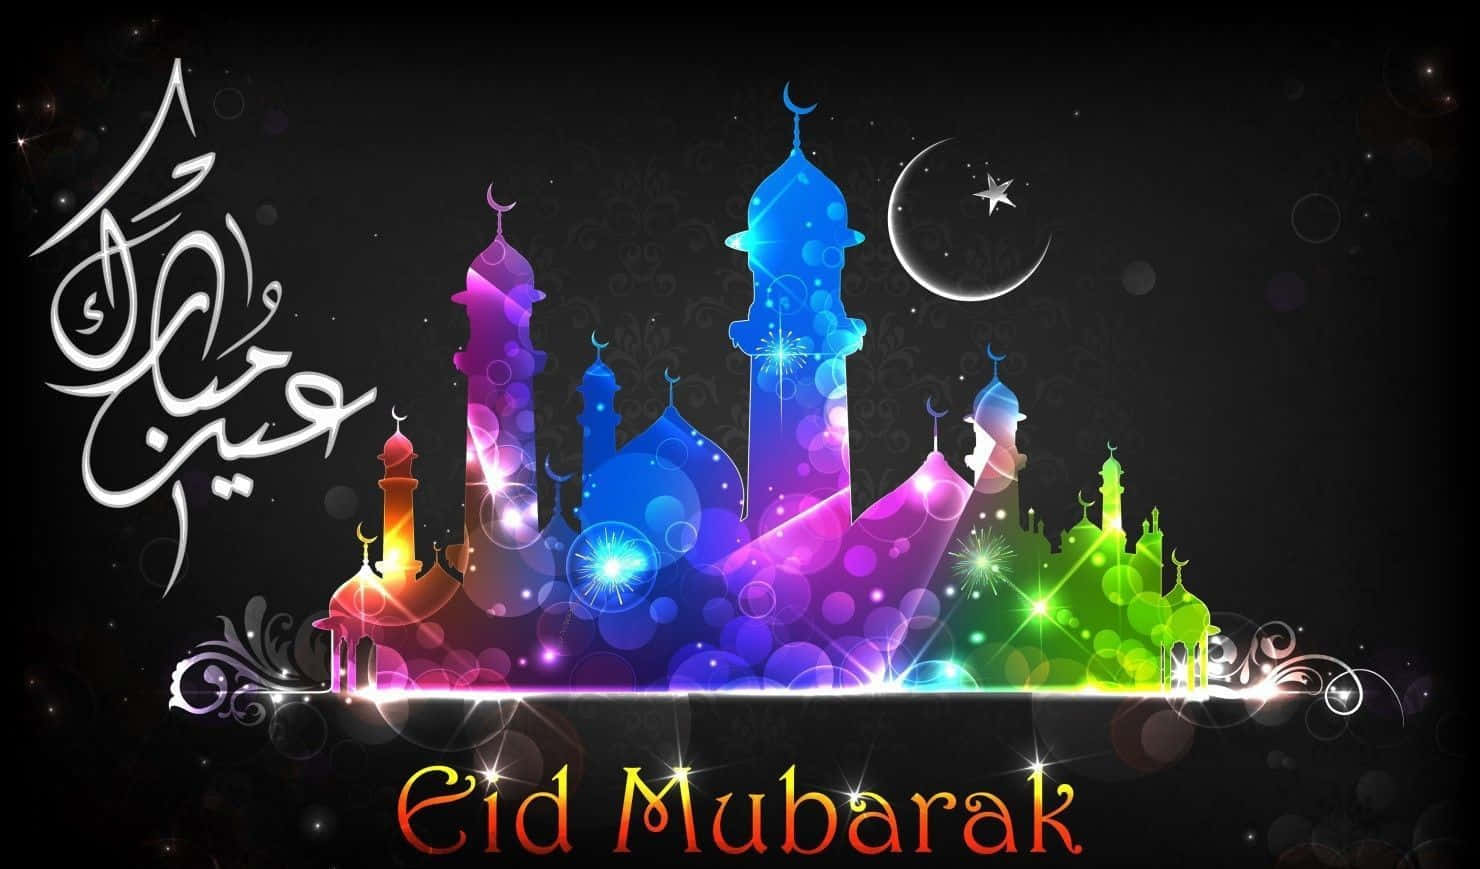 Feiernsie Den Geist Von Eid Mubarak Mit Freunden Und Familie.